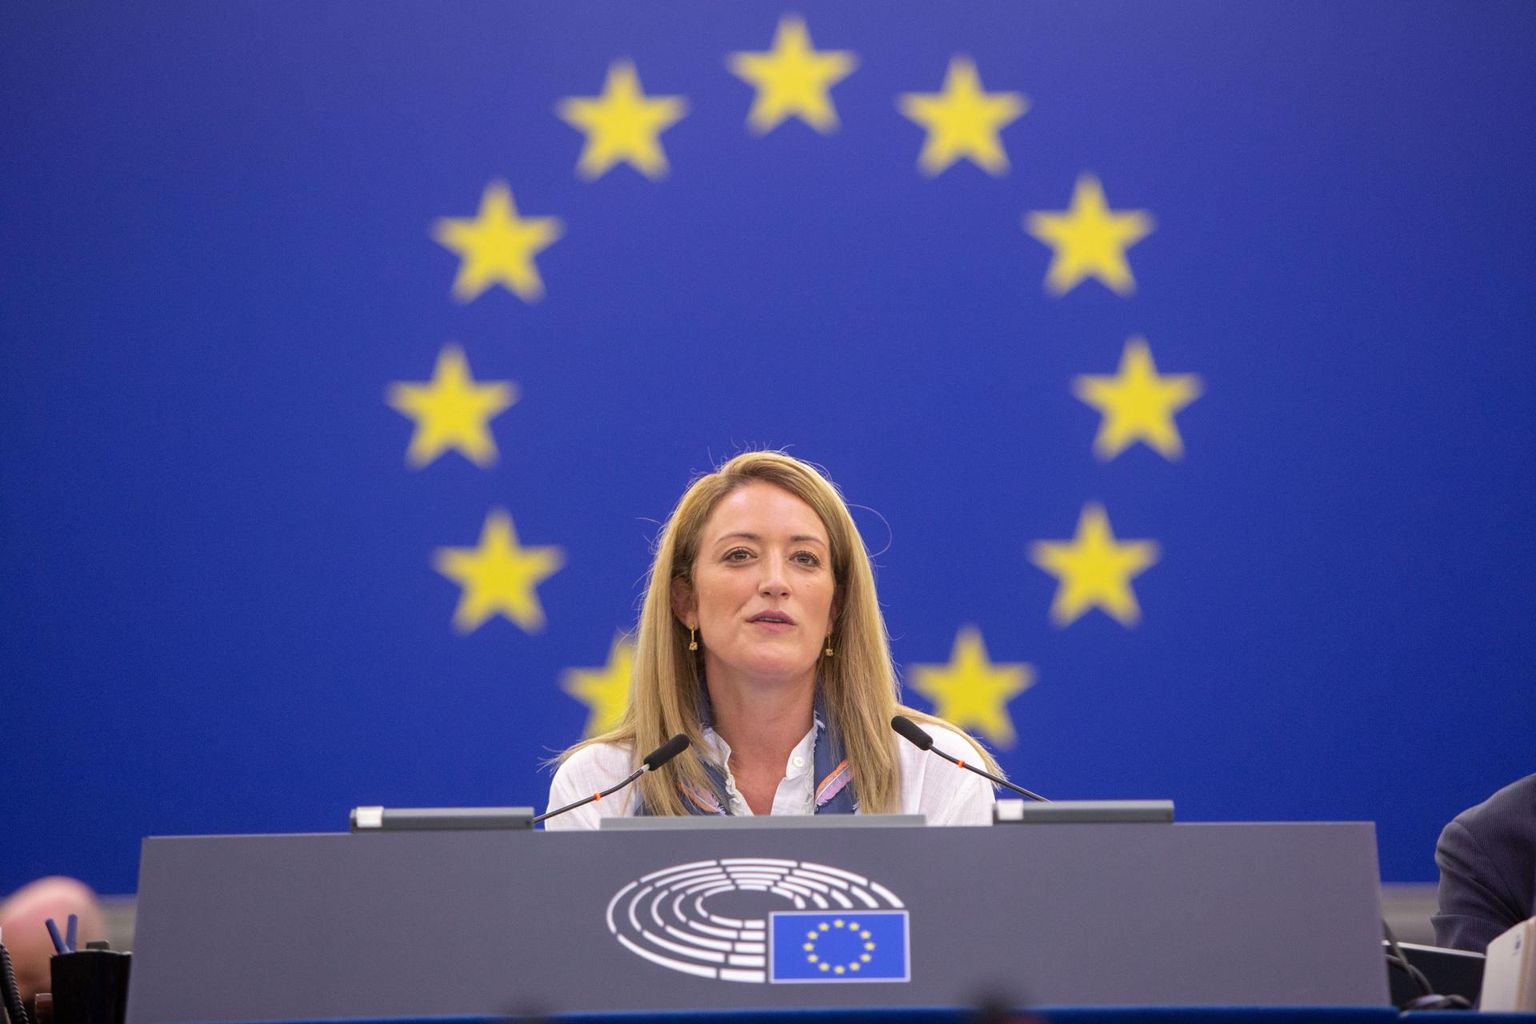 Roberta Metsolat peetakse üheks võimalikuks kandidaadiks Euroopa Parlamendi esimehe kohale. 